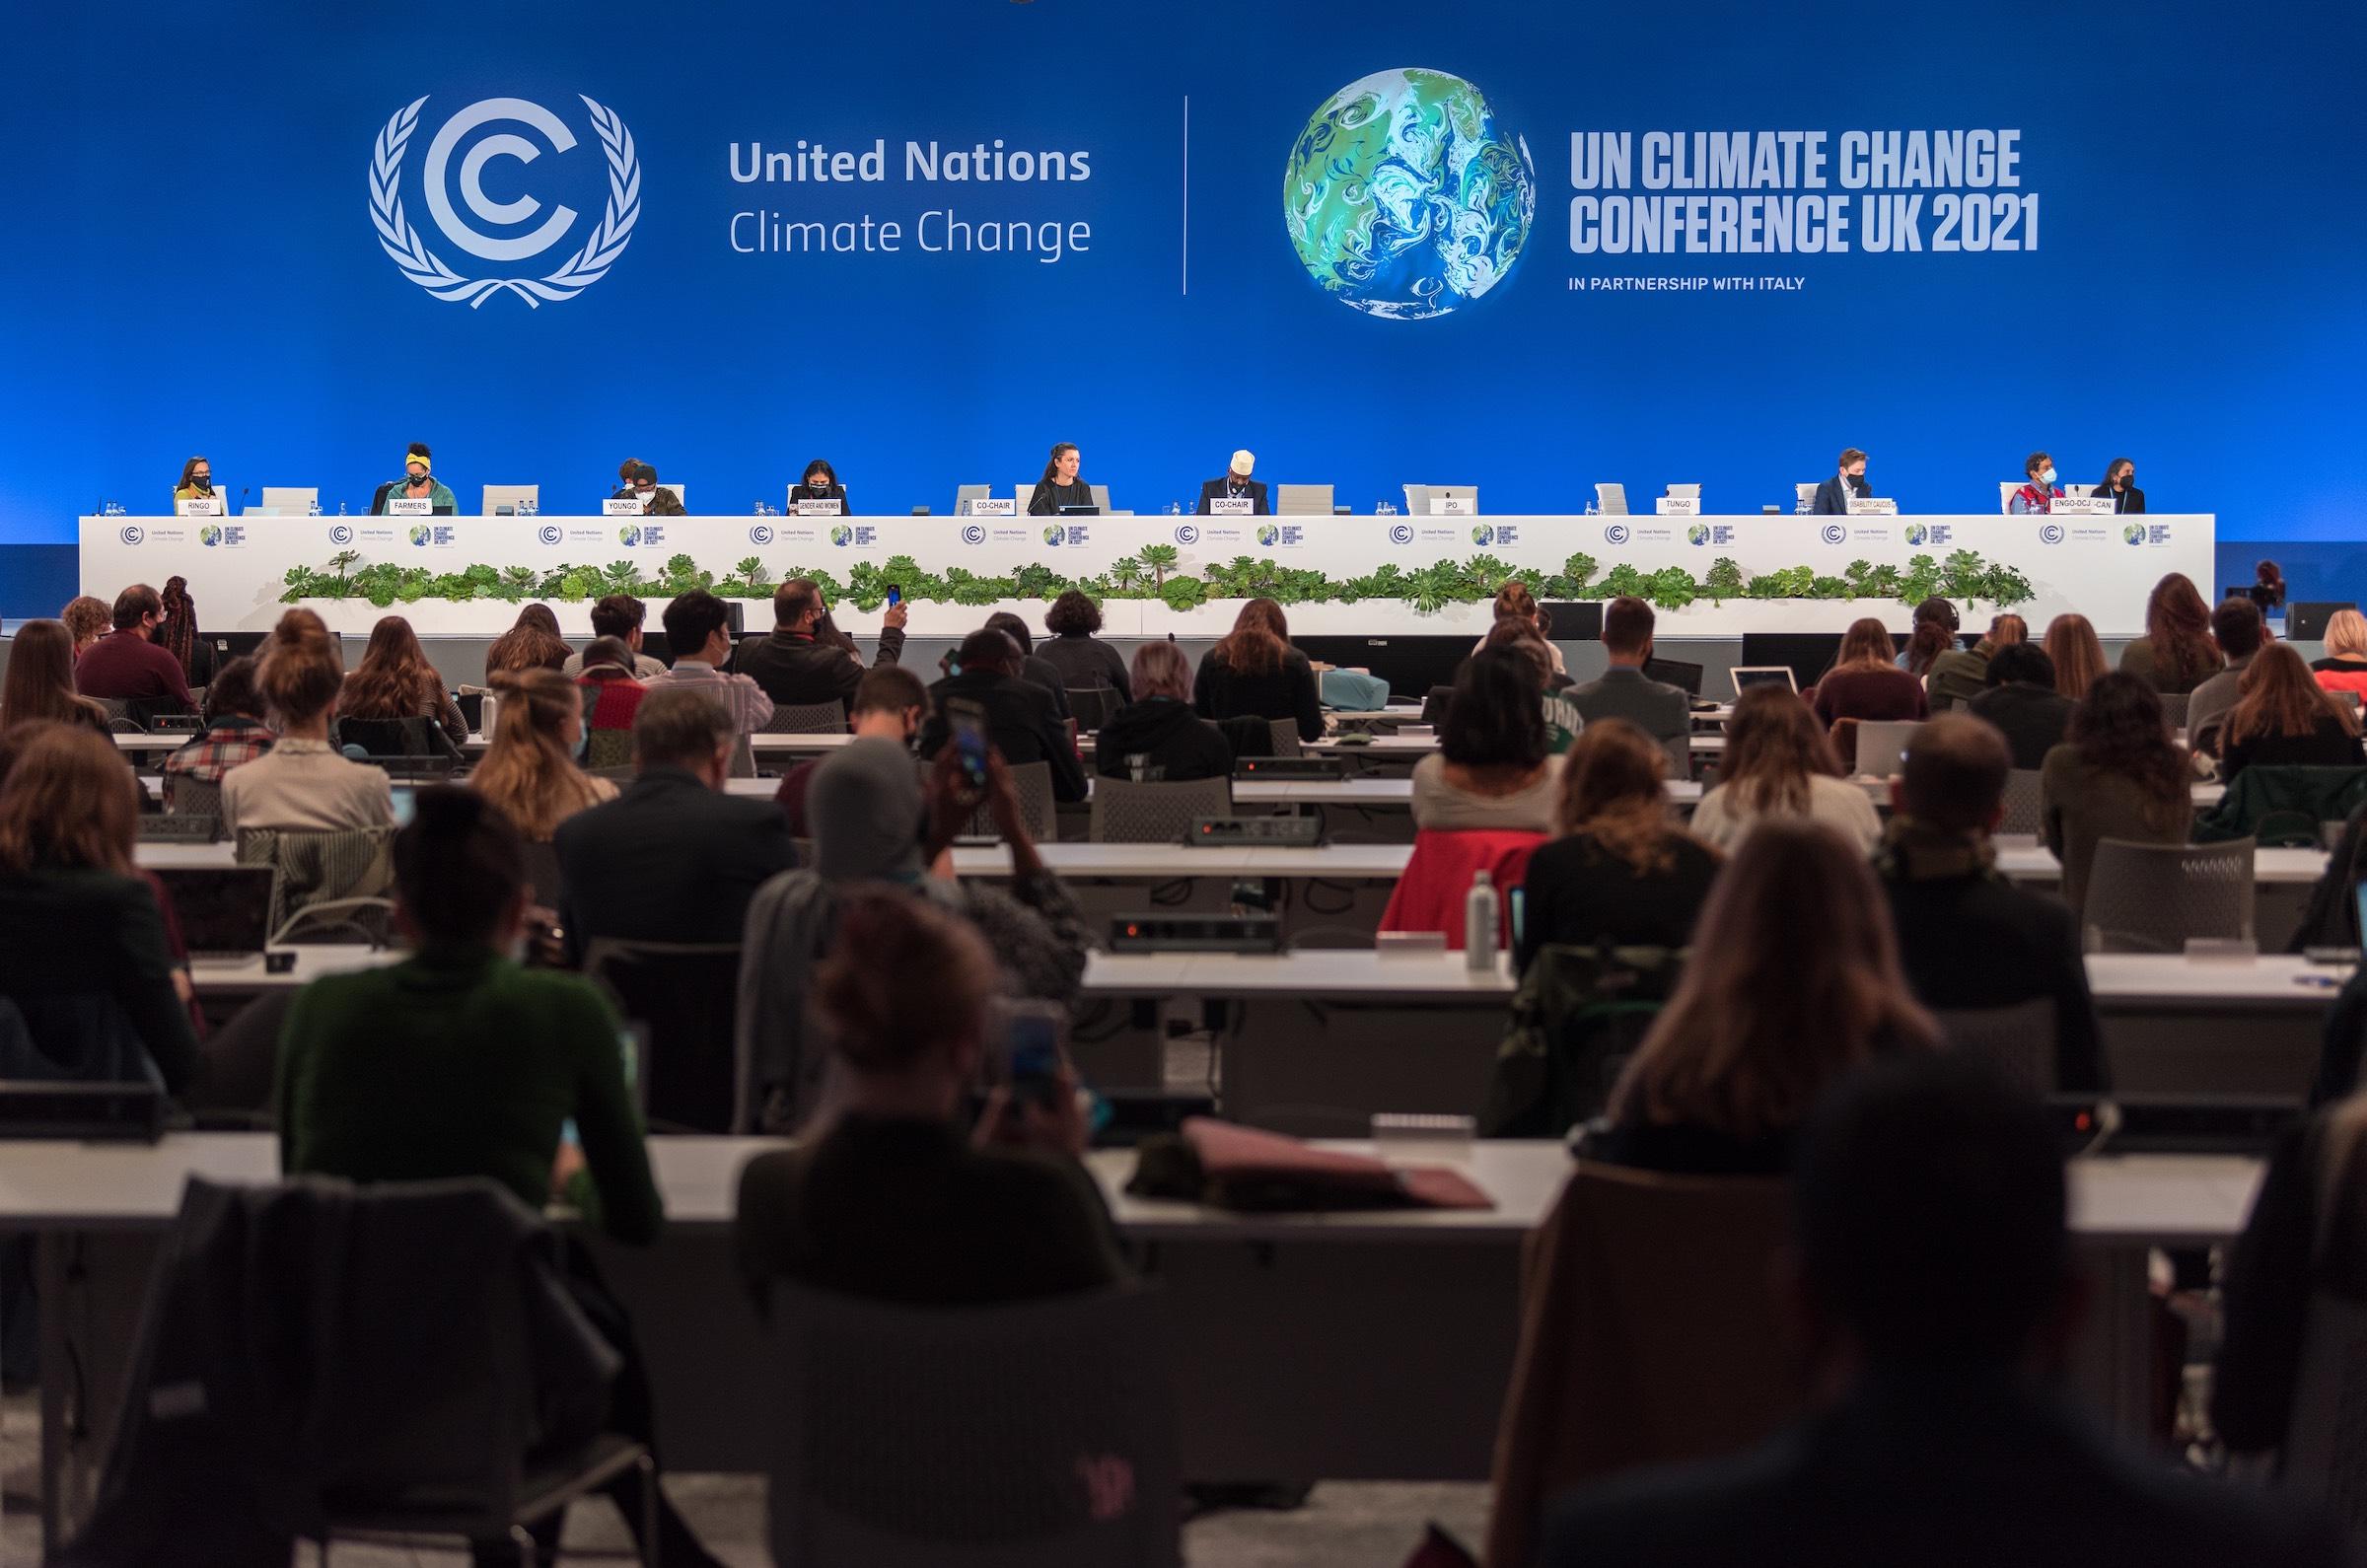 Glasgow war Gastgeber der UN-Klimakonferenz COP26, auf der die Staats- und Regierungschefs der Welt zusammenkamen, um über eine Antwort auf die anhaltende Klimakrise zu verhandeln. Foto: LWB/Albin Hillert